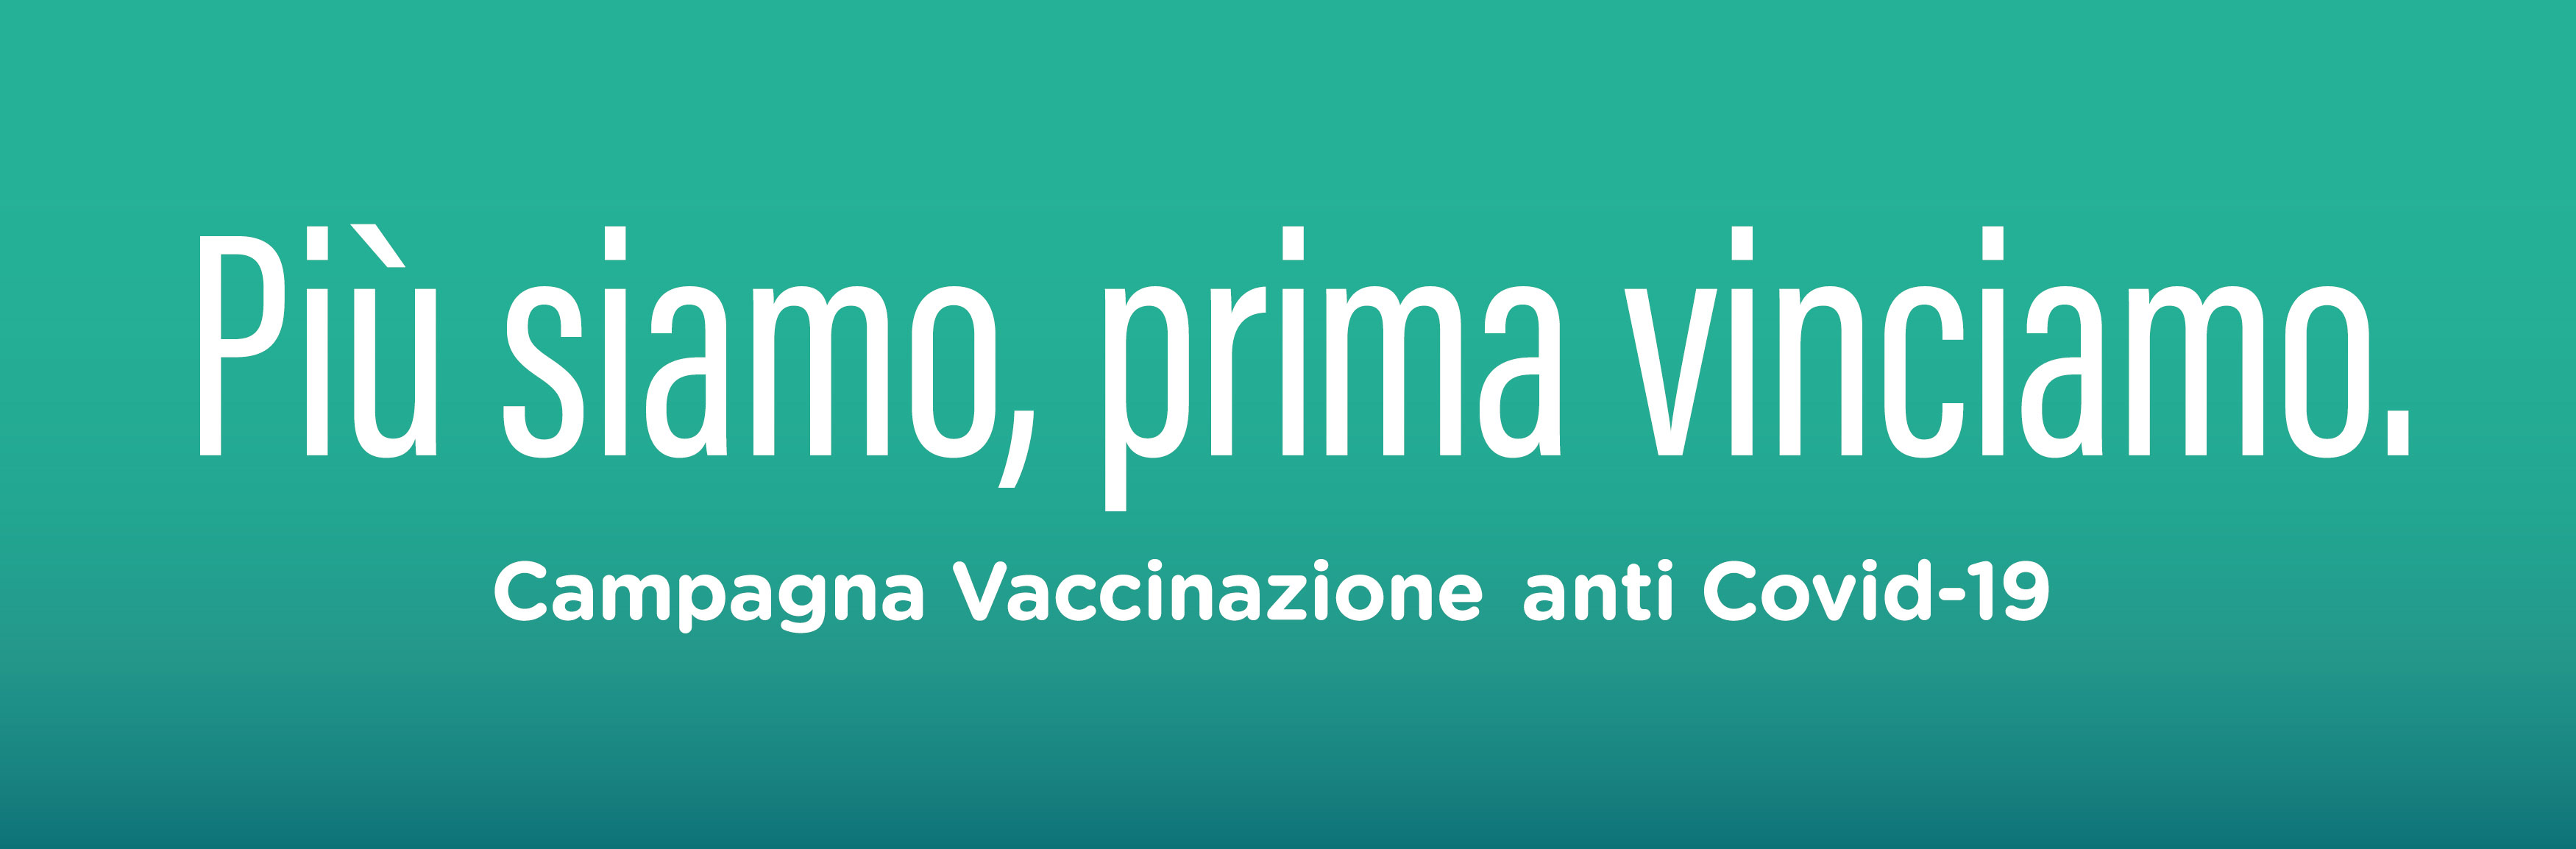 Immagine Campagna vaccinazione anticovid19 